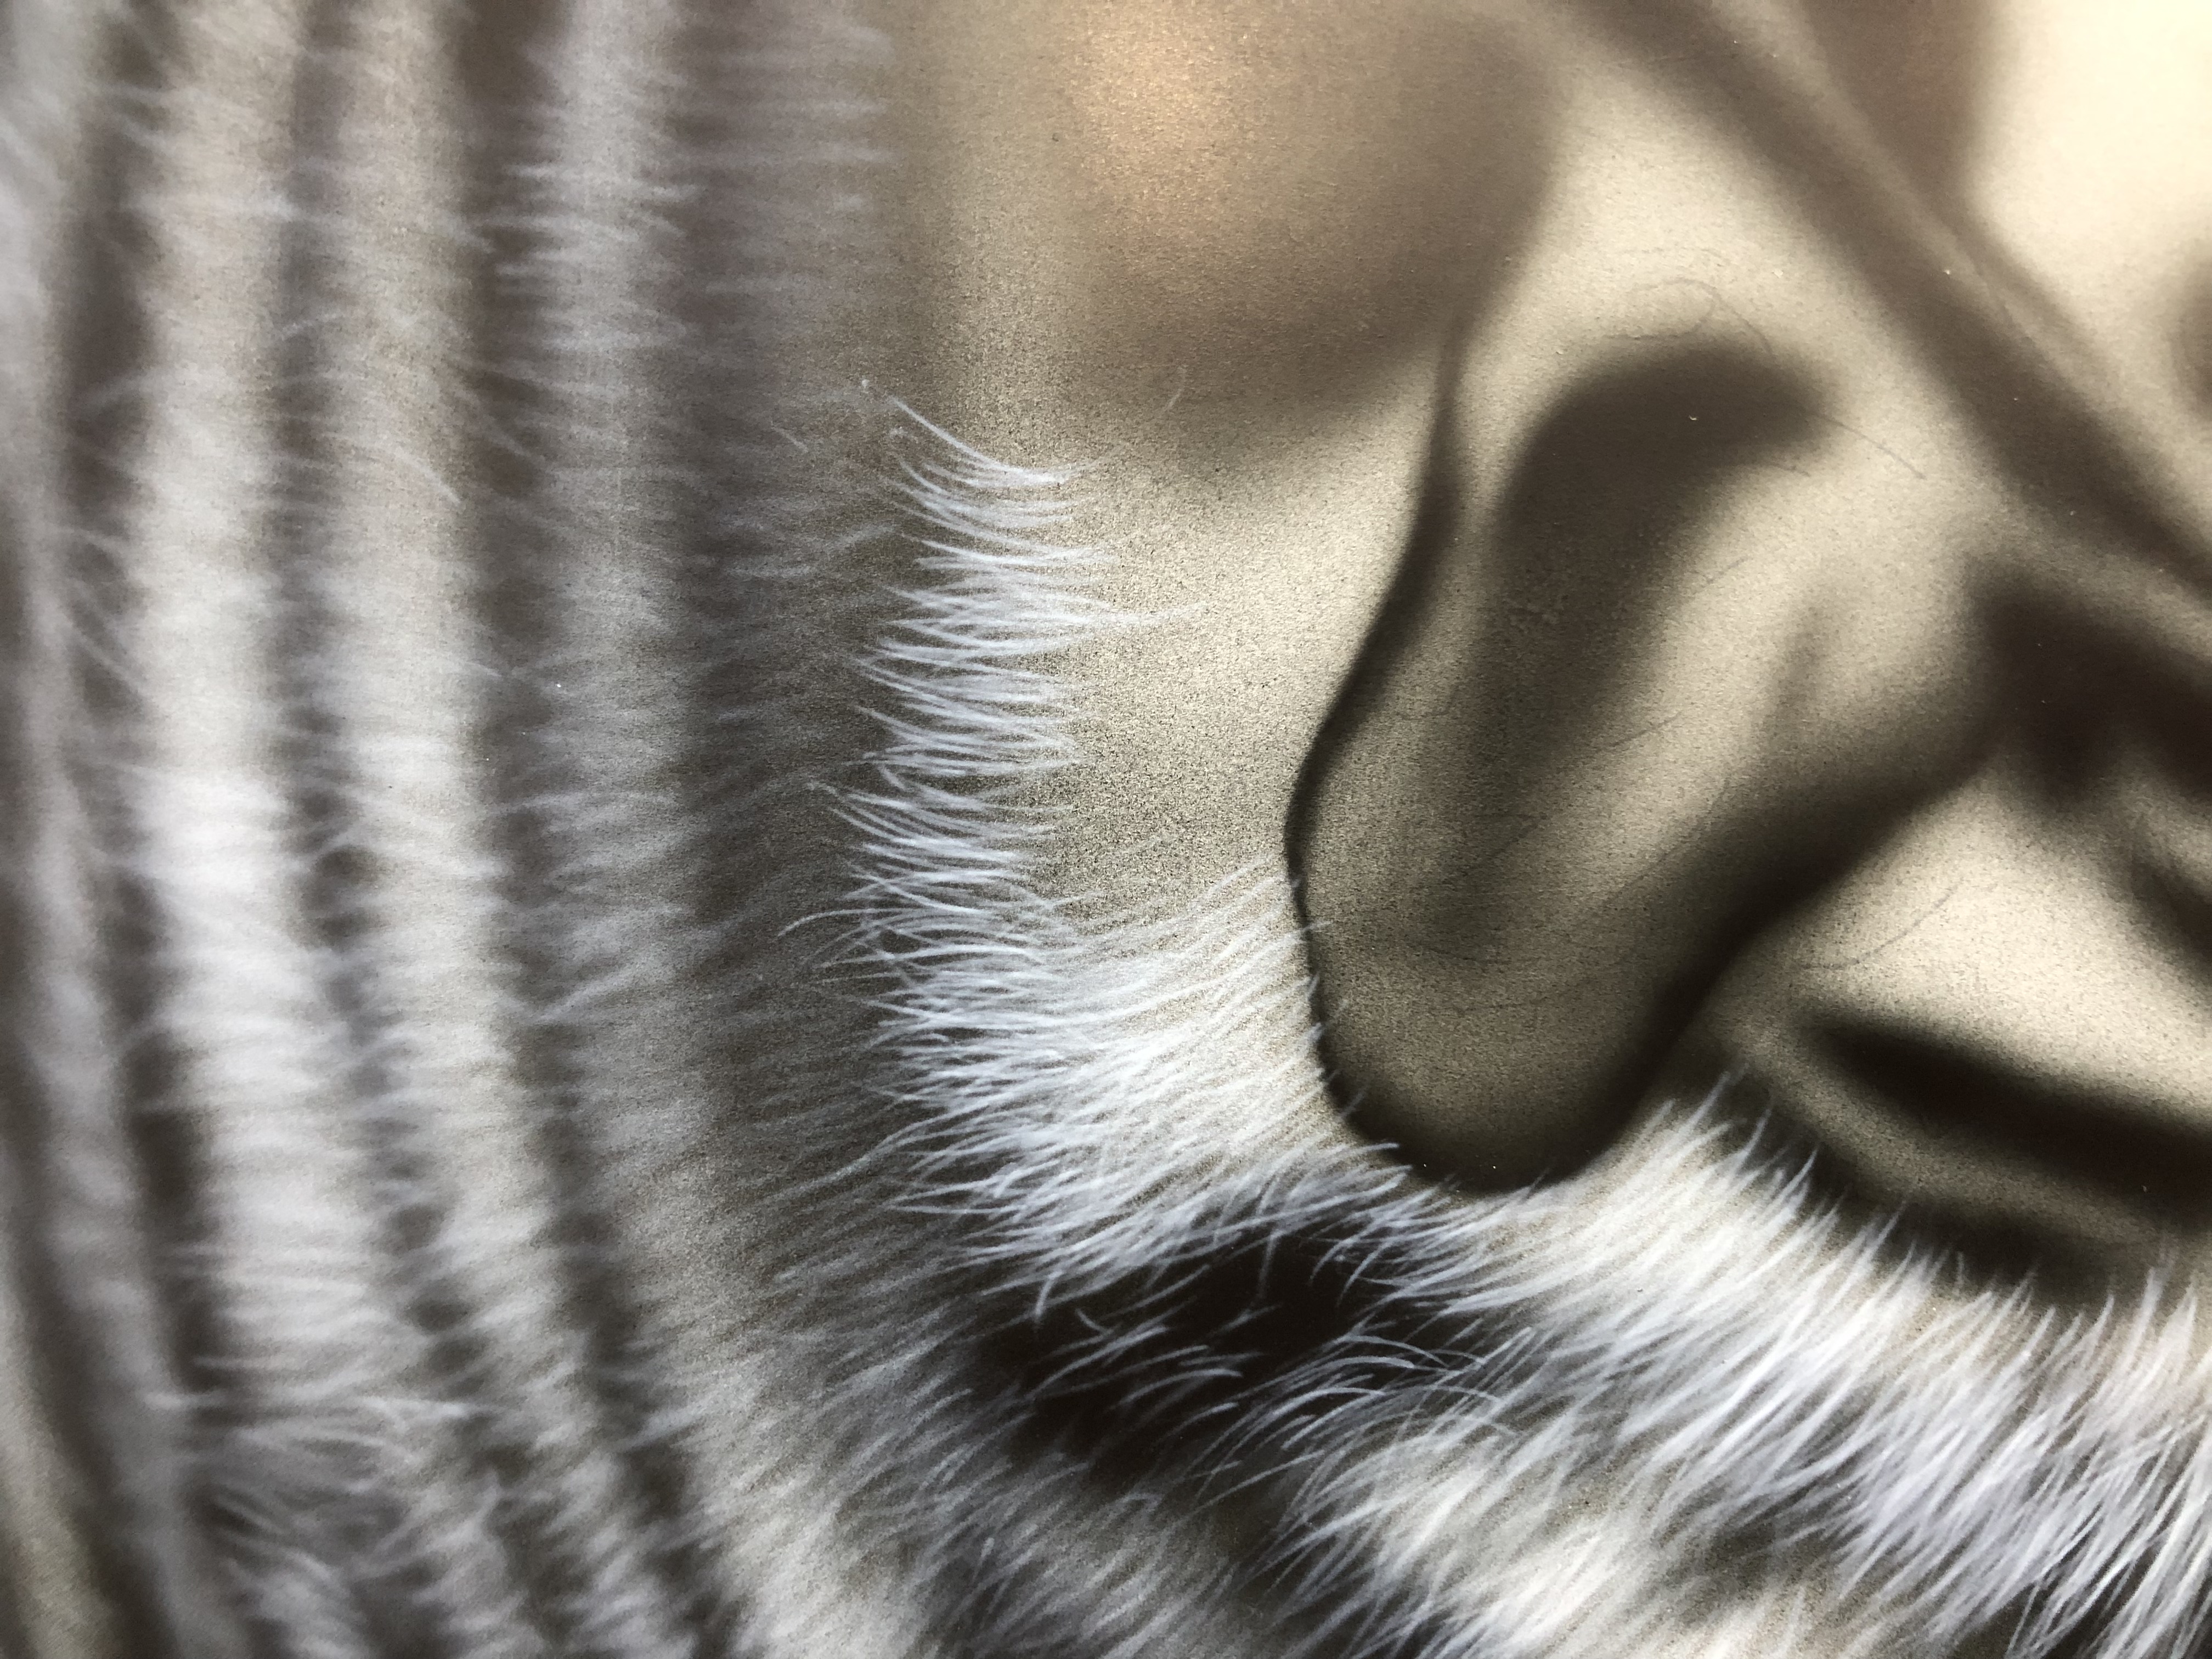 エアブラシアート描き方 動物画編 動物の毛の描き方3 エアブラシオンラインスクール